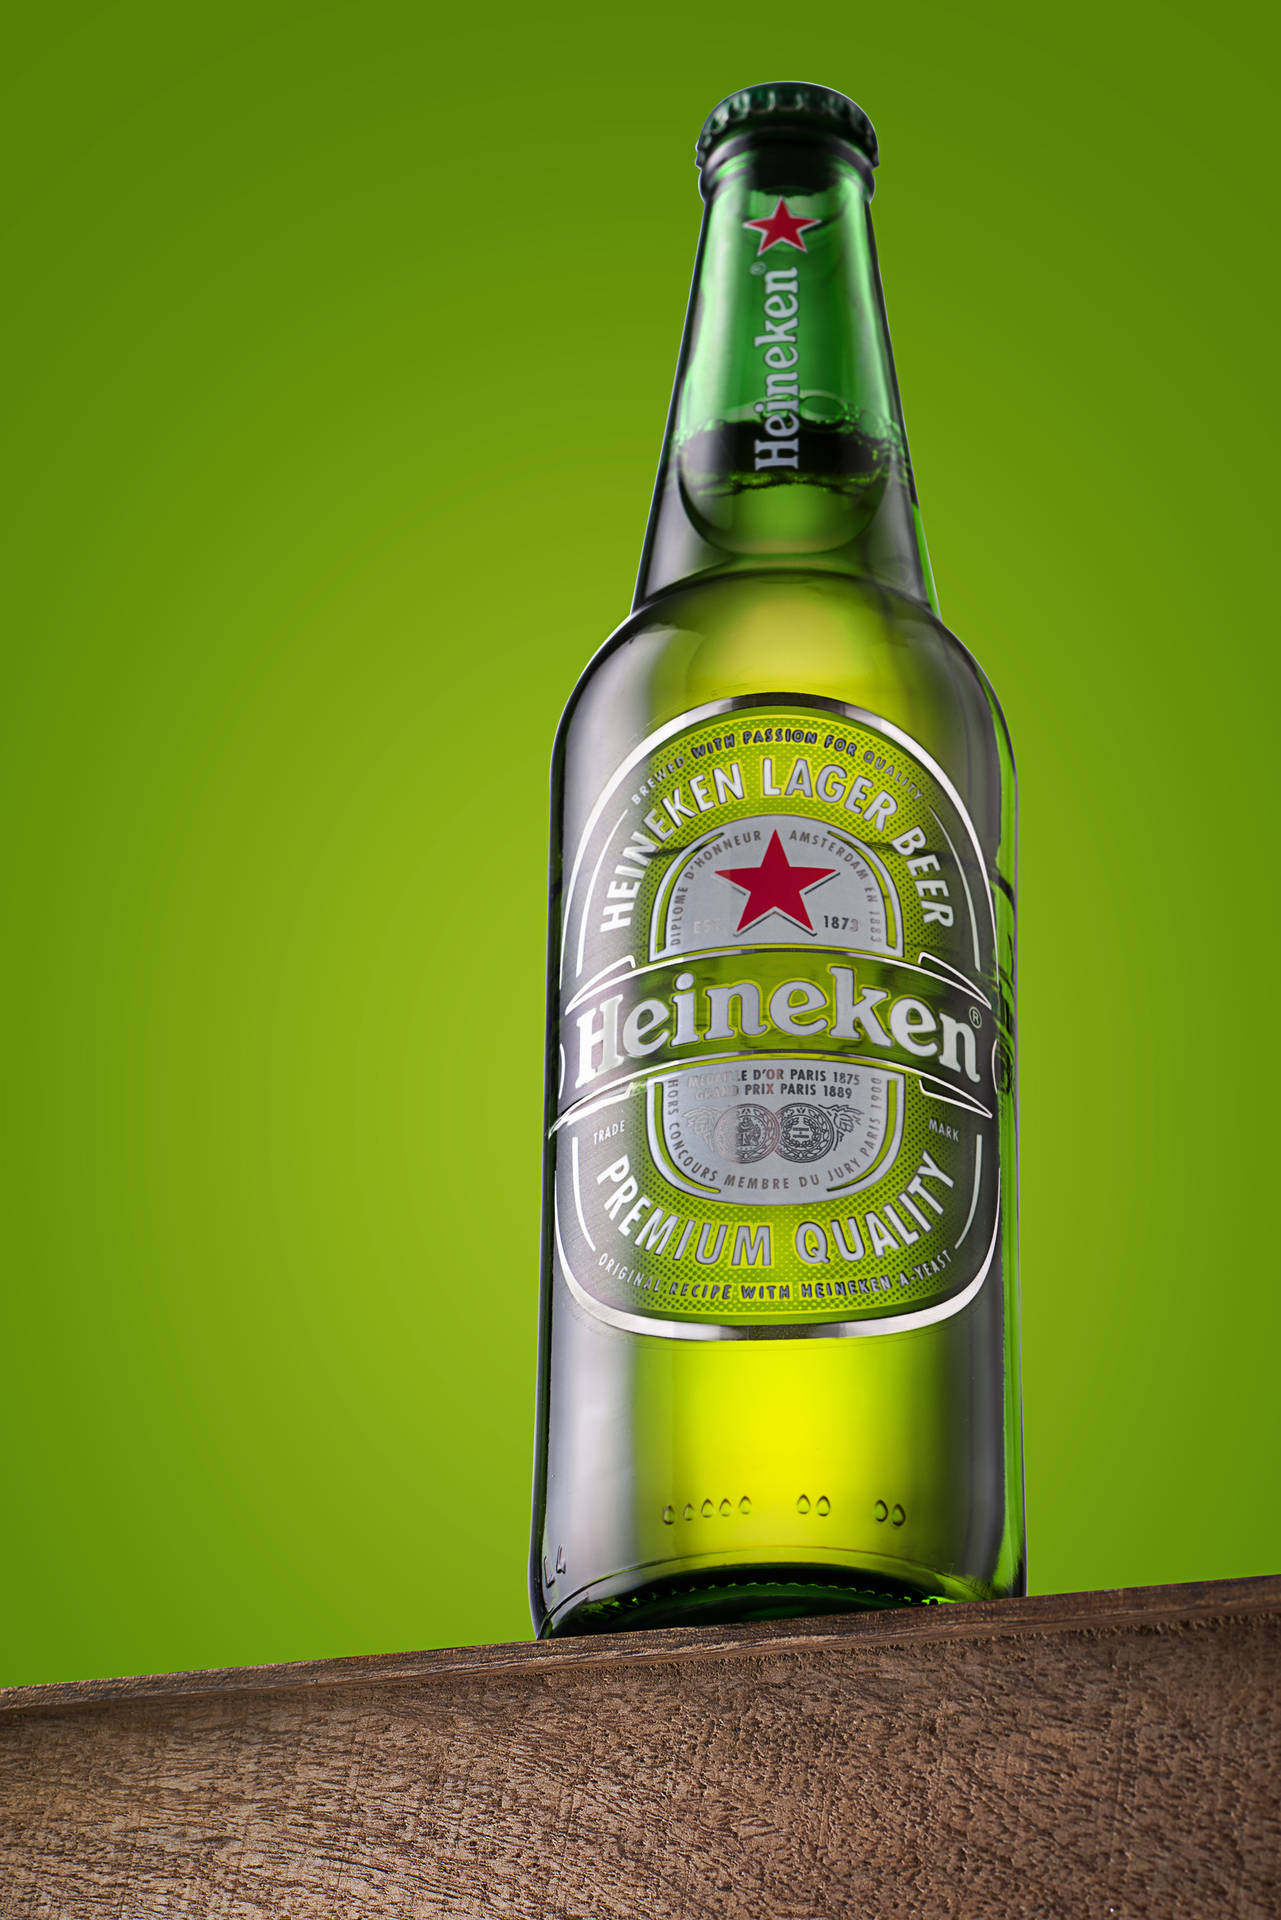 "One Perfect Heineken Pint" Wallpaper